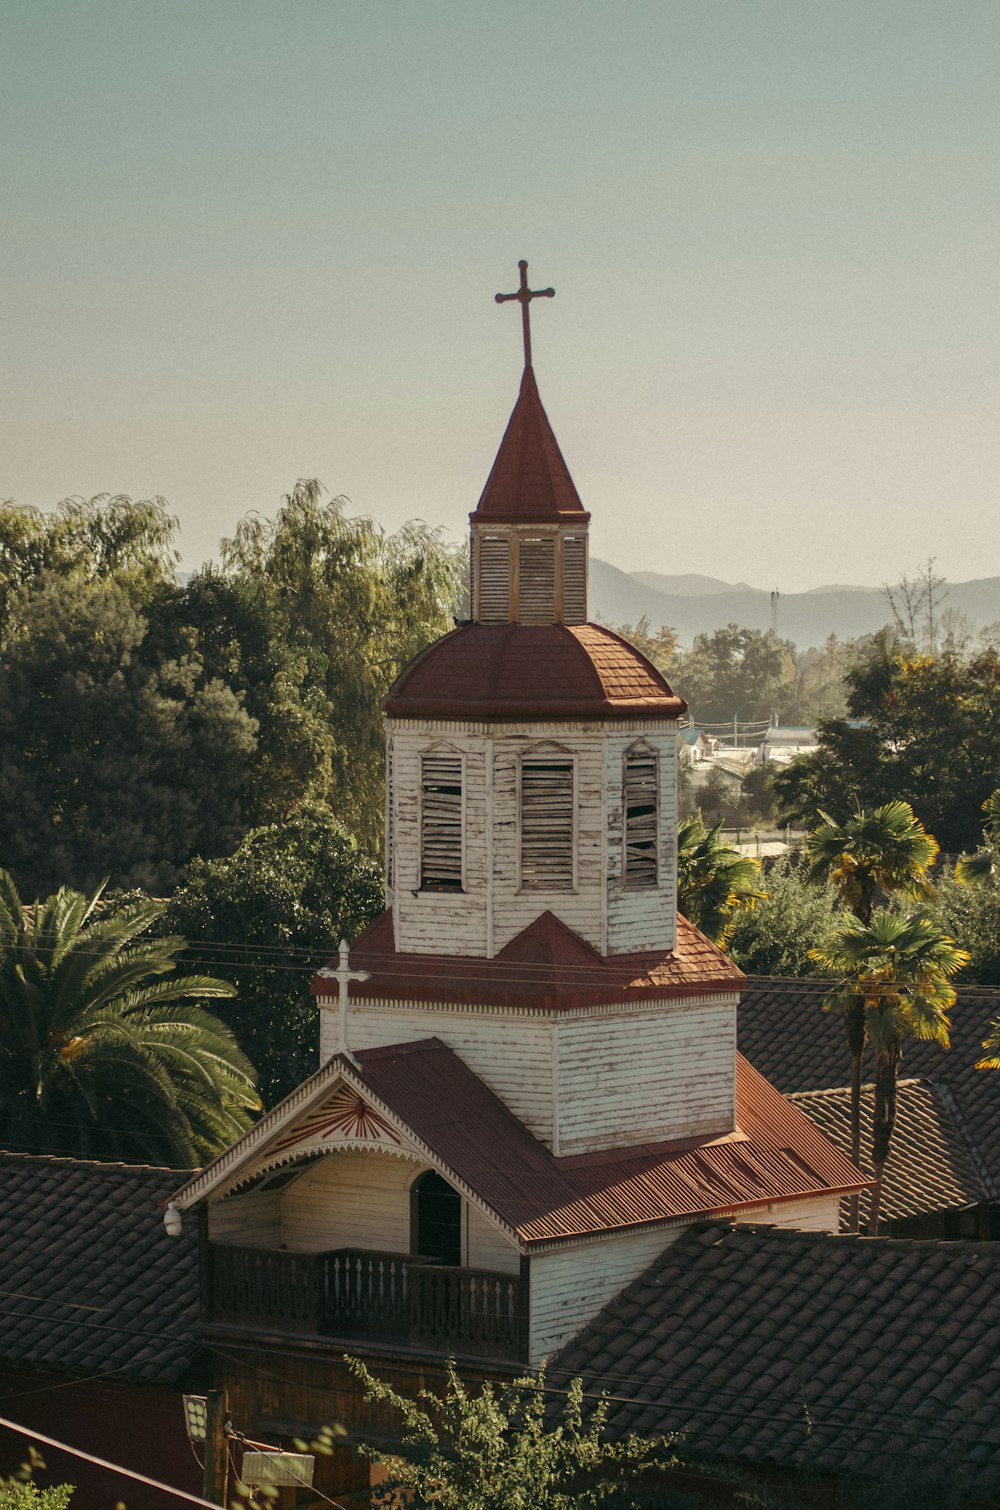 el campanario de una iglesia con una cruz en la parte superior